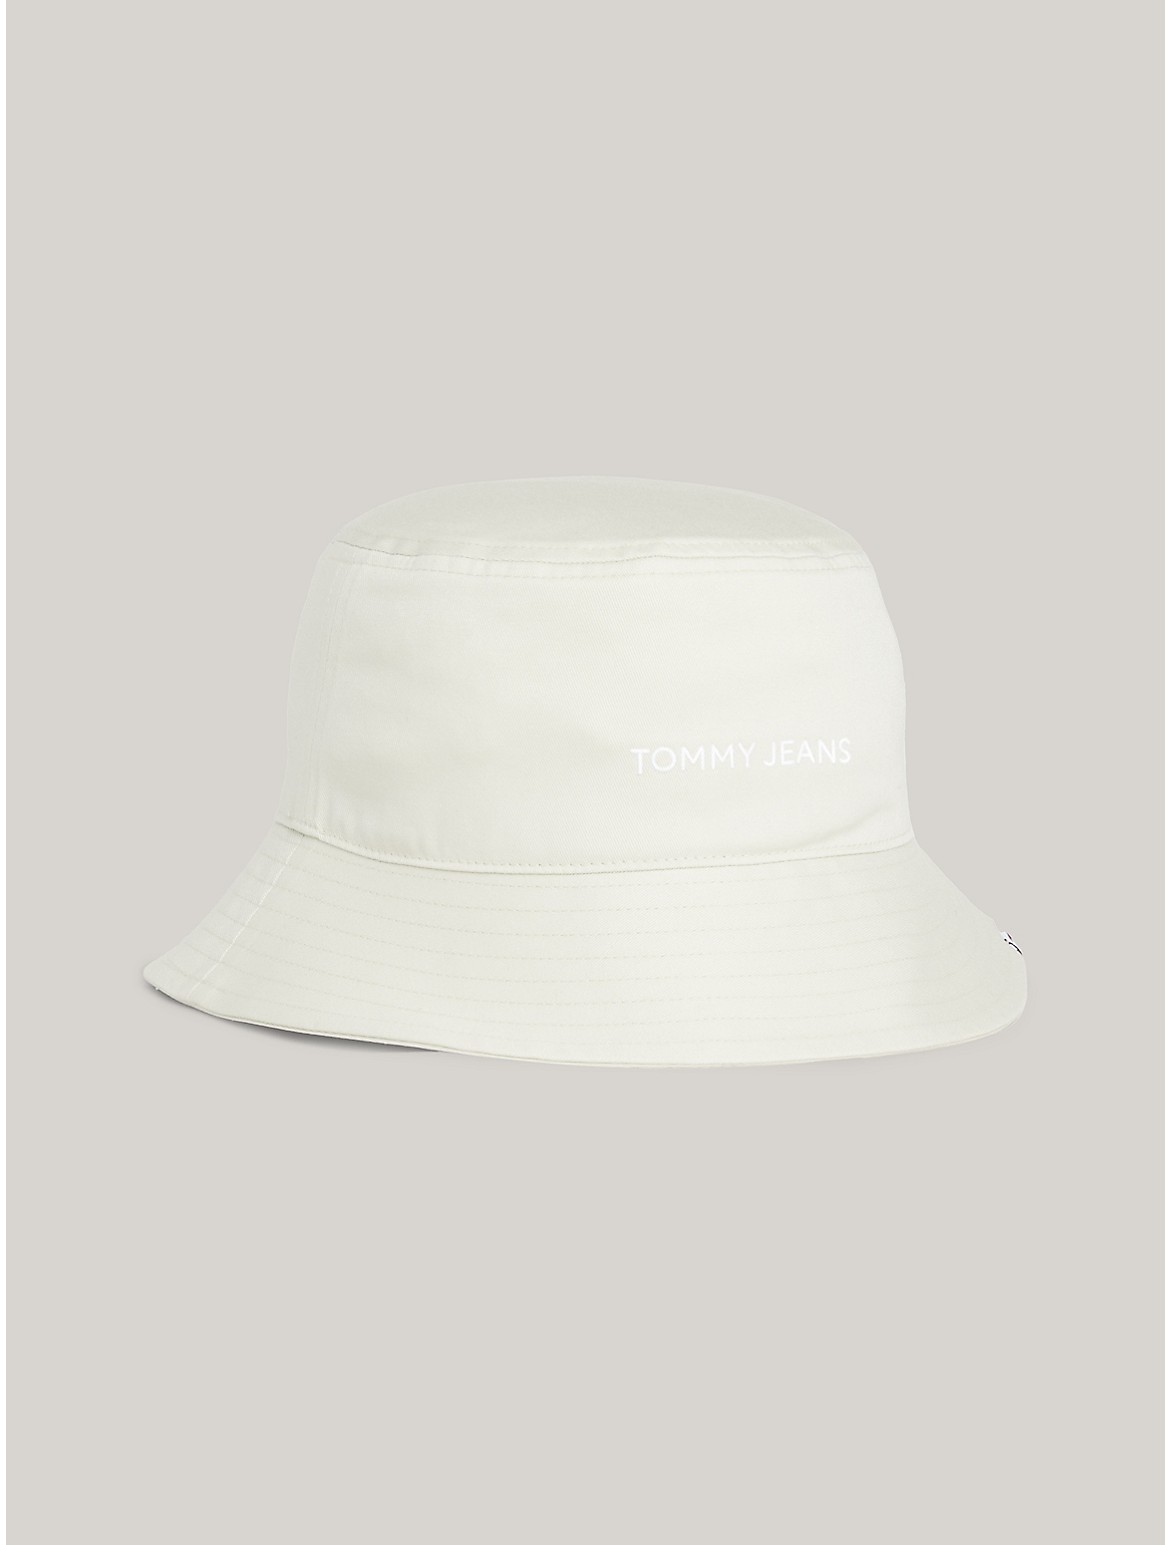 Tommy Hilfiger Women's TJ Logo Bucket Hat